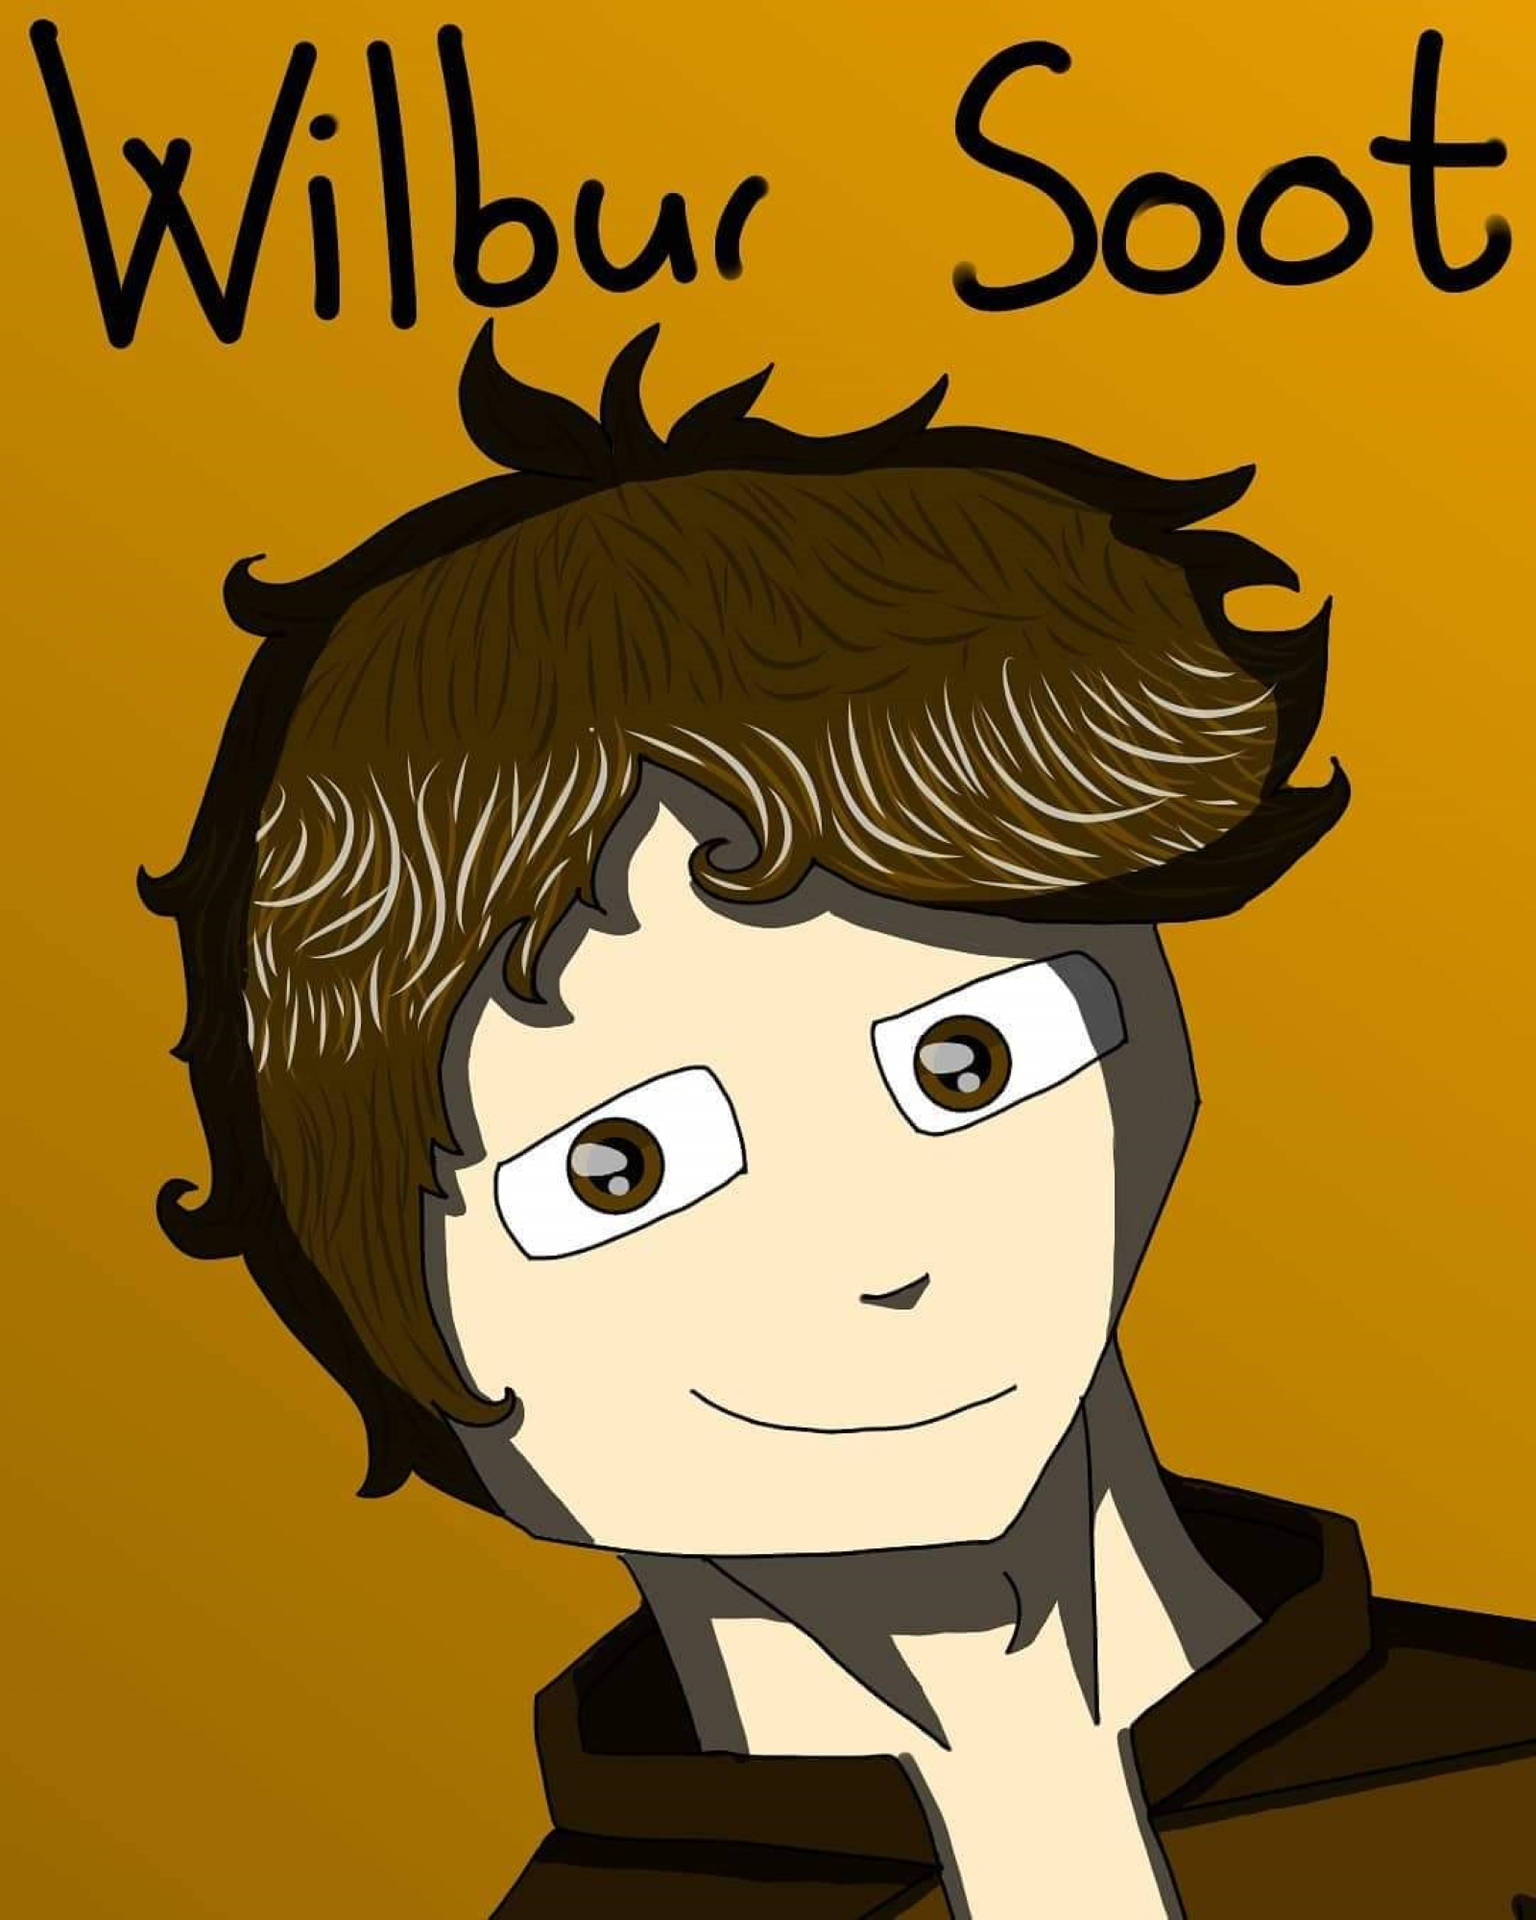 Wilbur Soot Digital Drawing Wallpaper